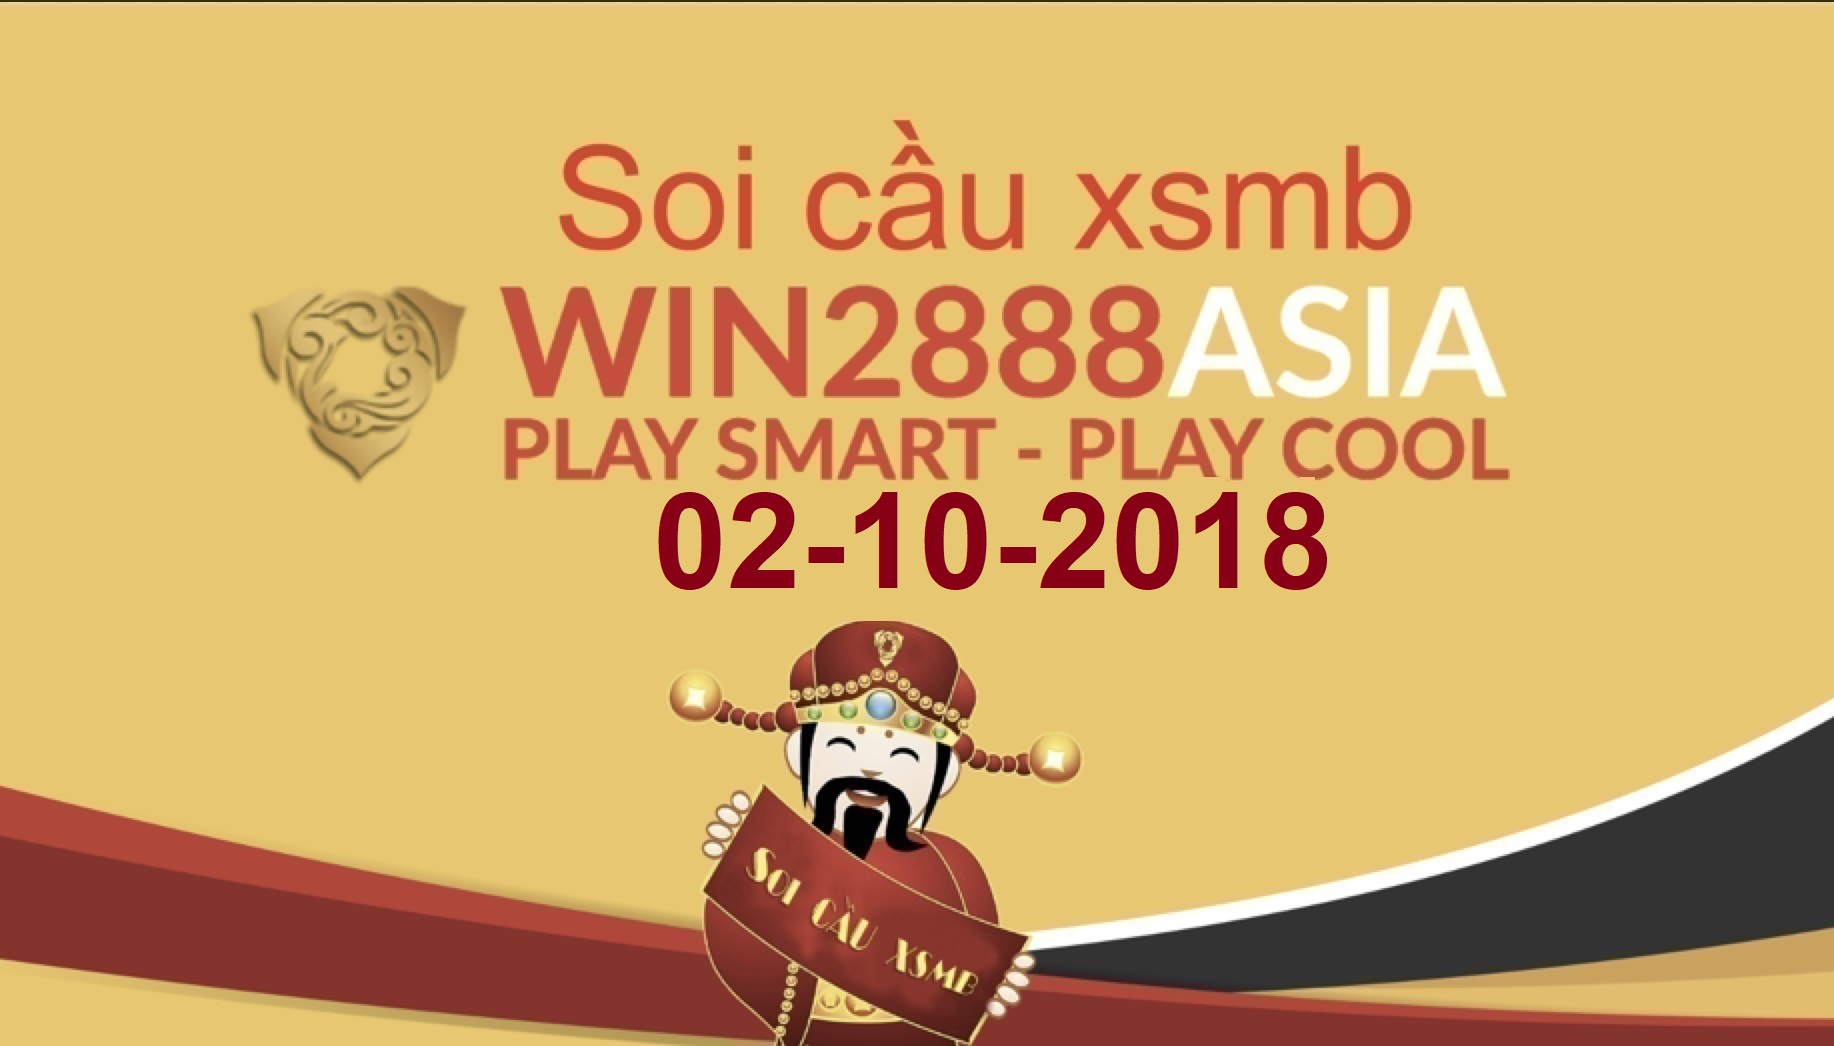 Soi cầu xsmb win2888 02-10-2018 Dự đoán xsmb chuẩn xác win2888